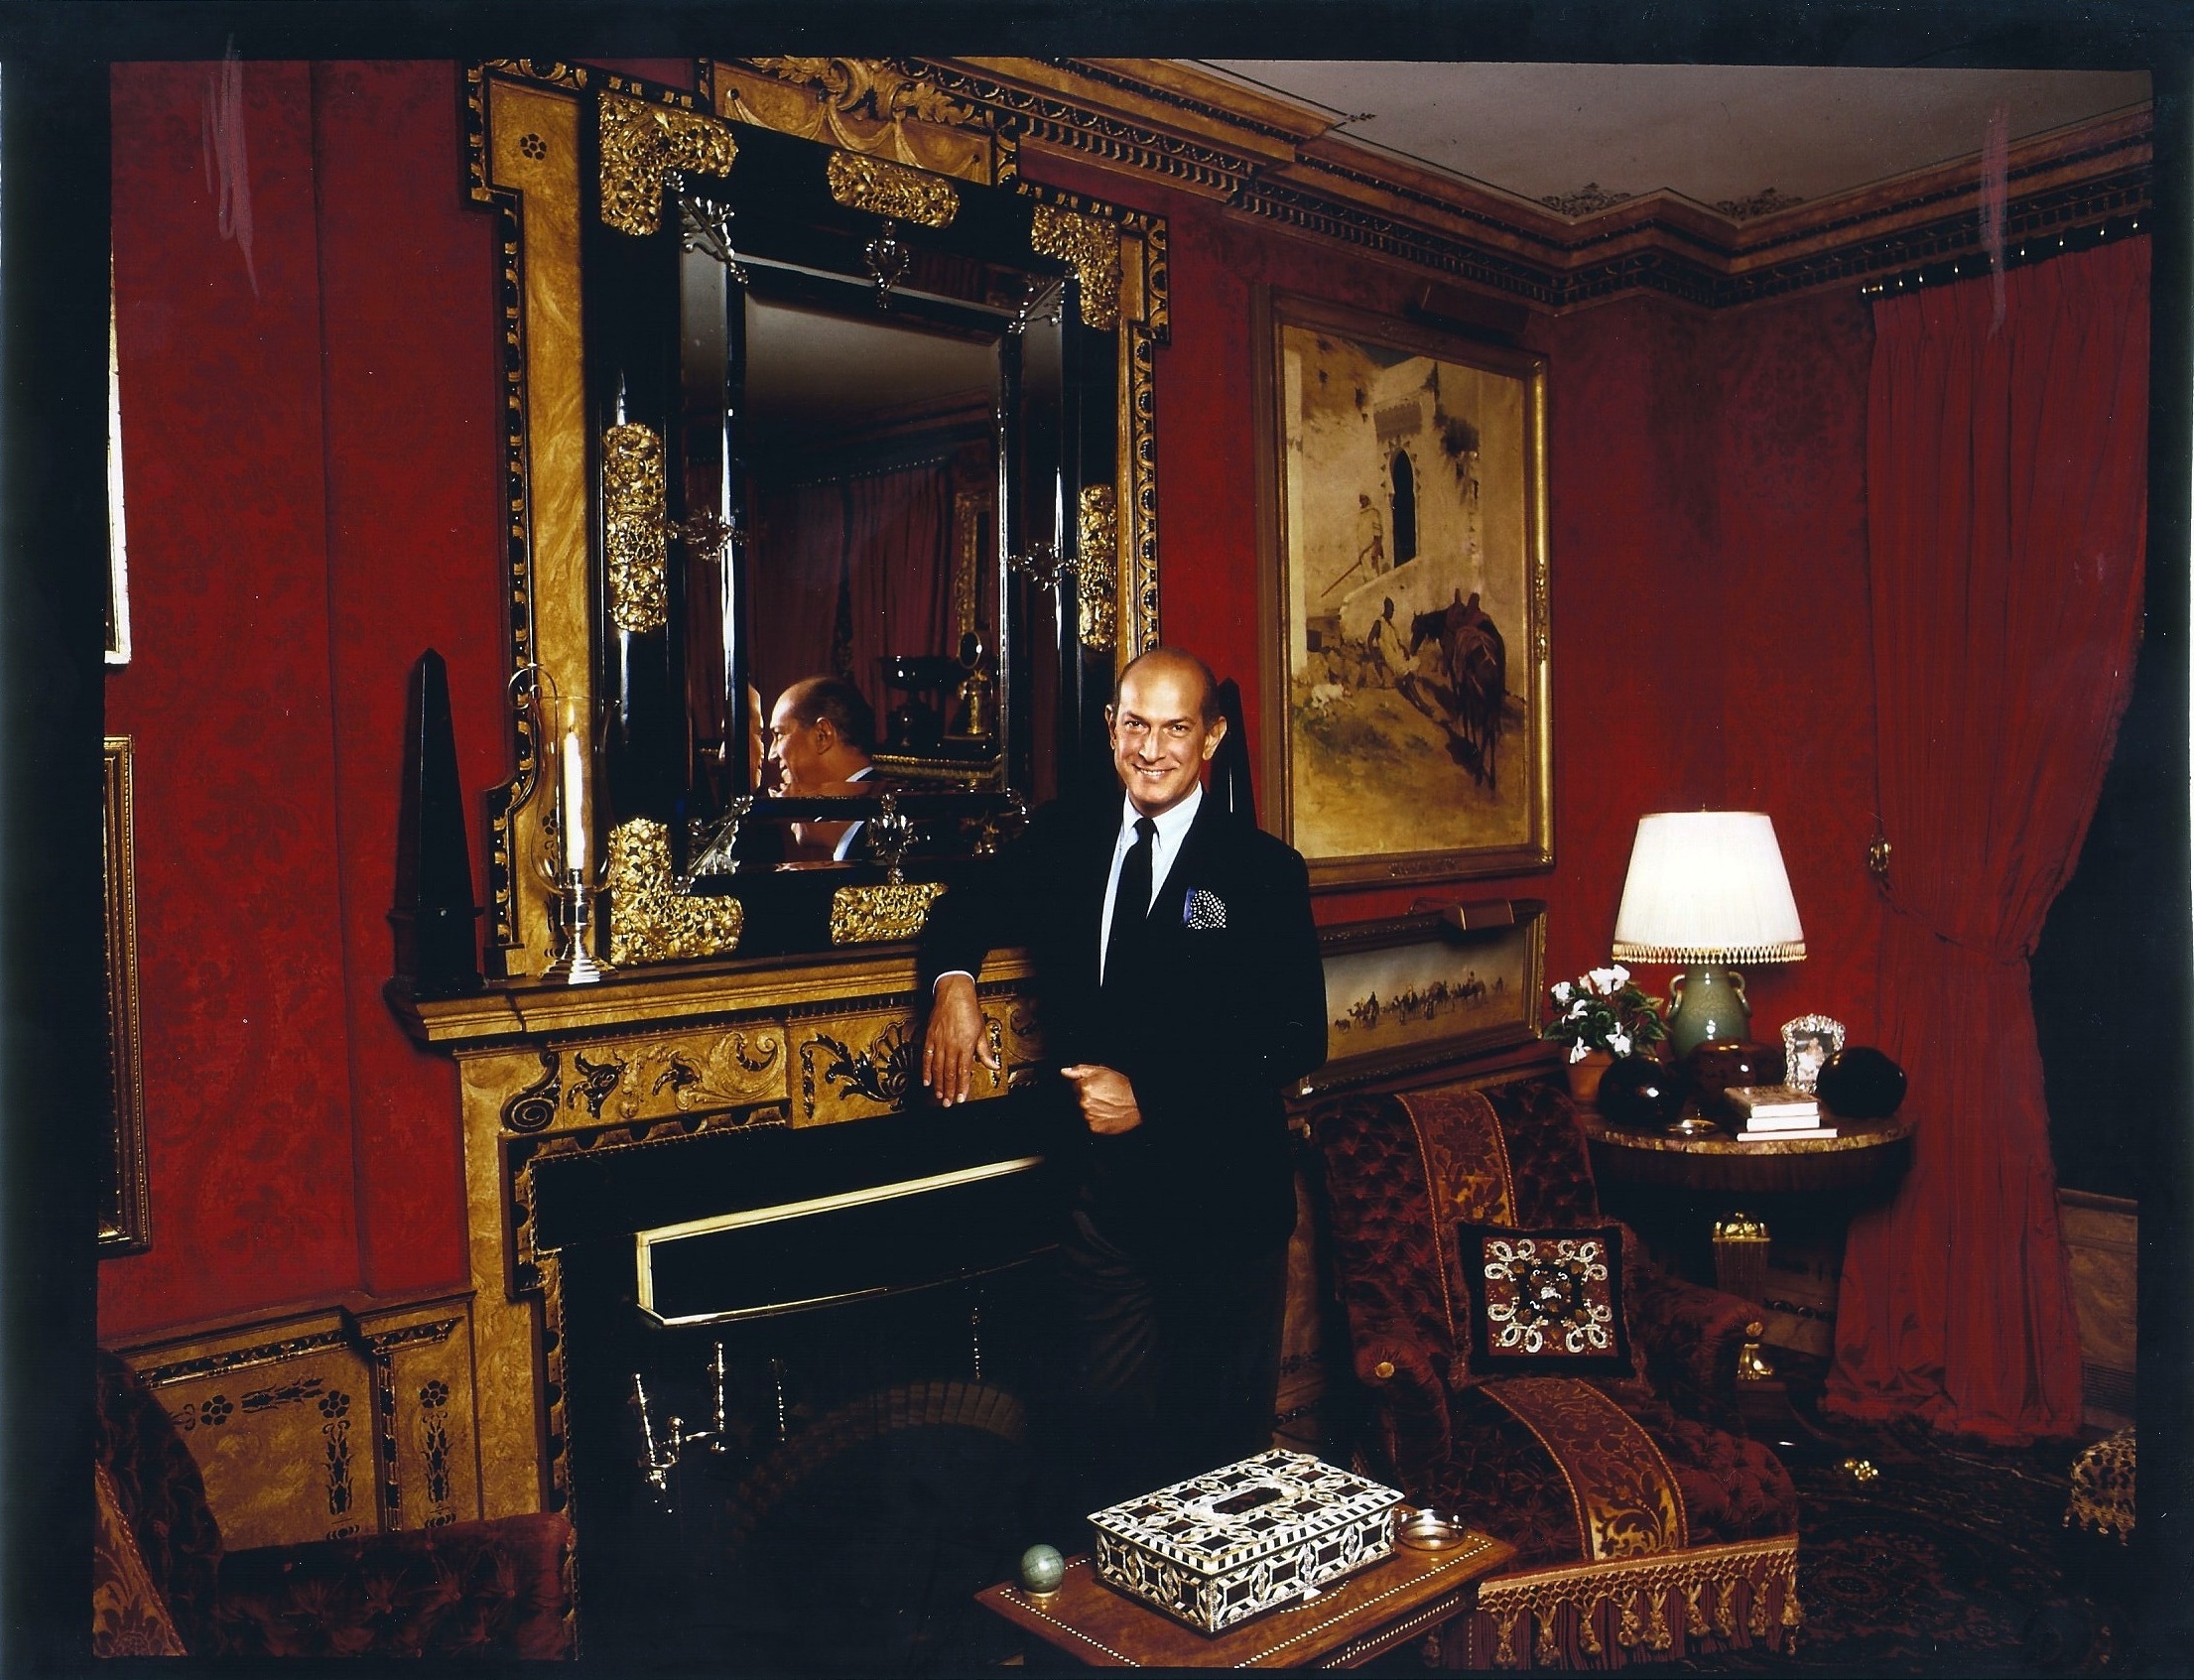 Oscar de la Renta standing in a red room by a mirror